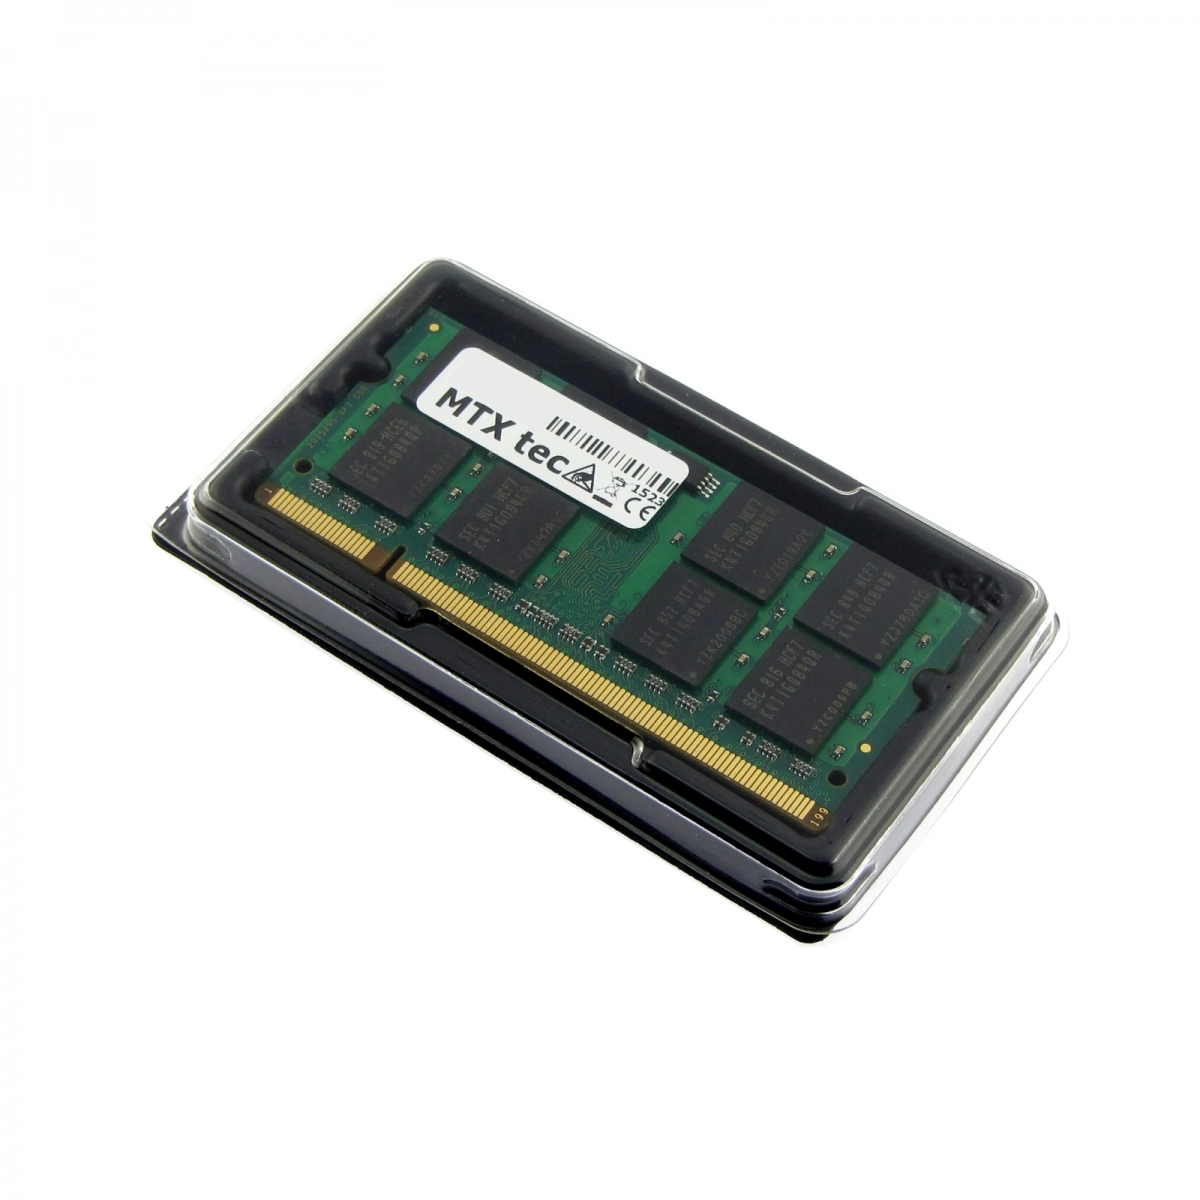 MTXtec Arbeitsspeicher 1 GB RAM für DELL Inspiron 6400